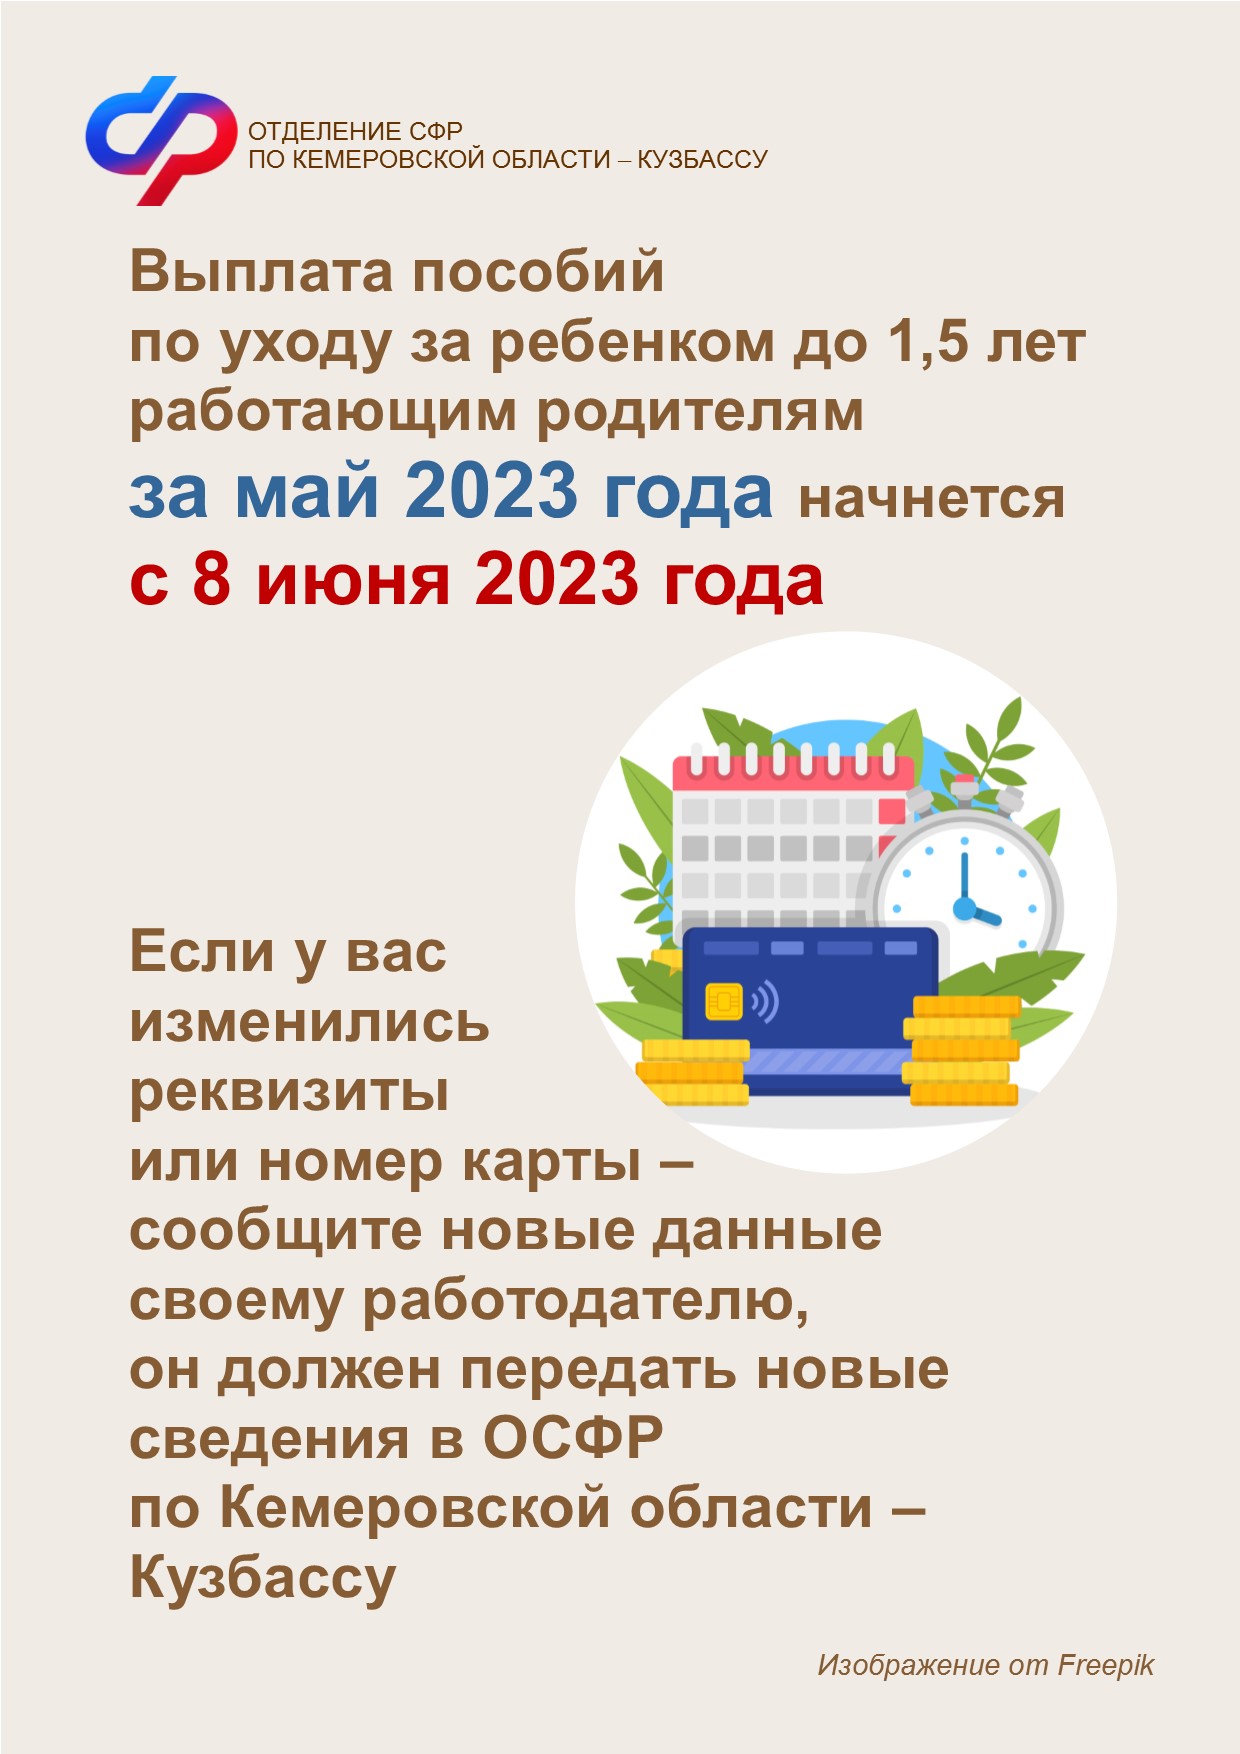 Выплата пособий по уходу за ребенком до 1,5 лет работающим родителям за май 2023 года начнется с 8 июня 2023 года